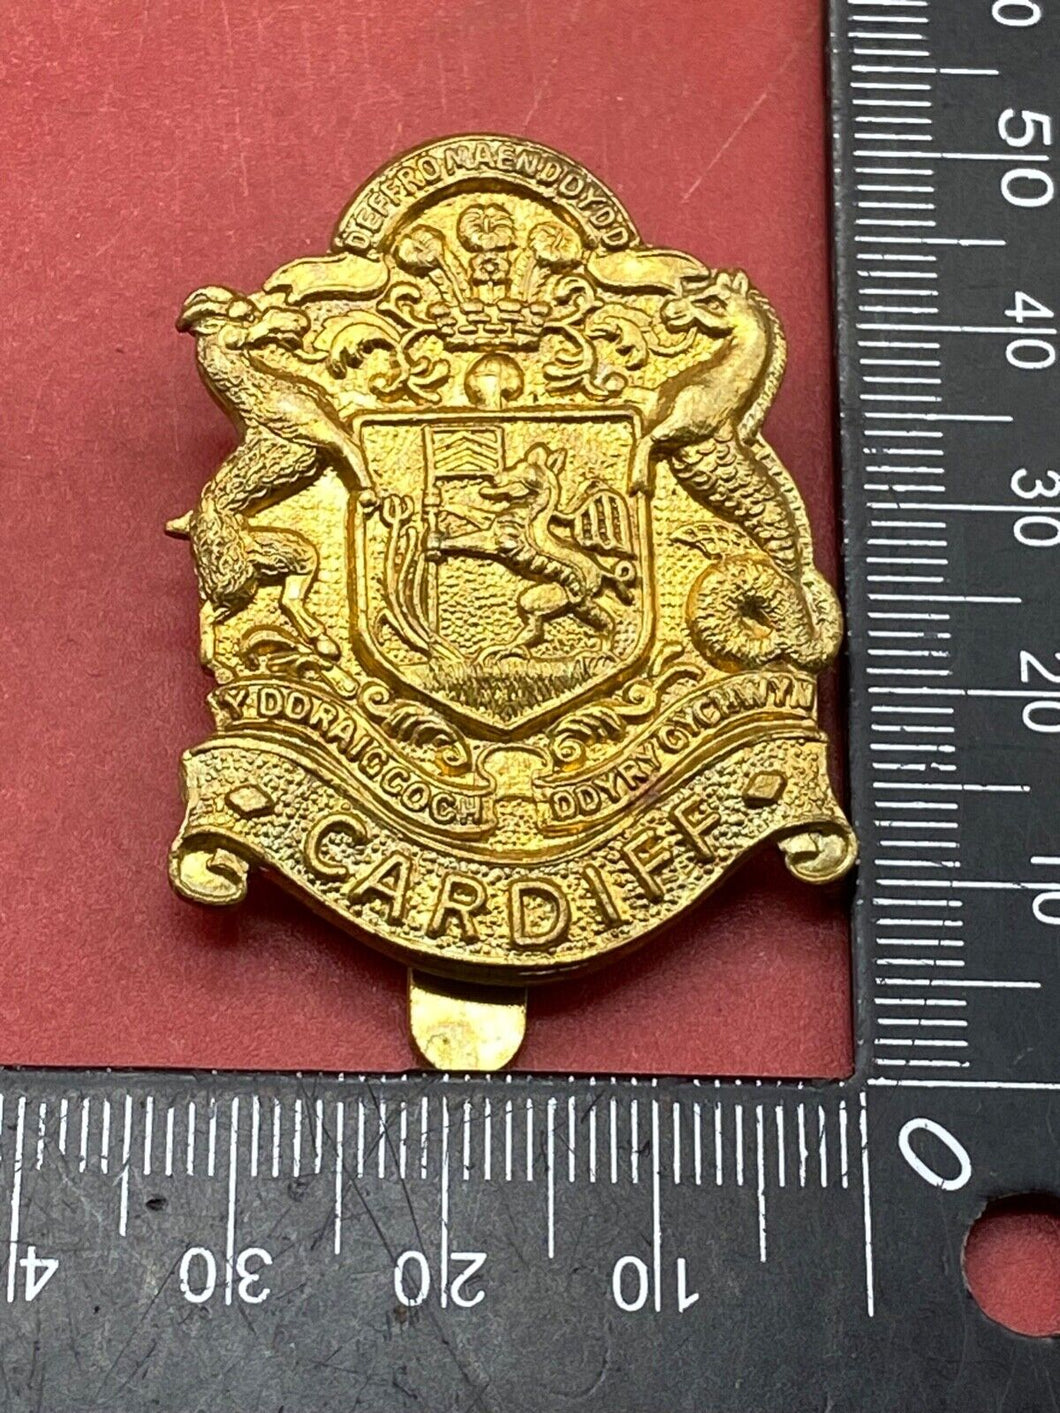 Original British Army CARDIFF Regiment Brass Cap Badge.